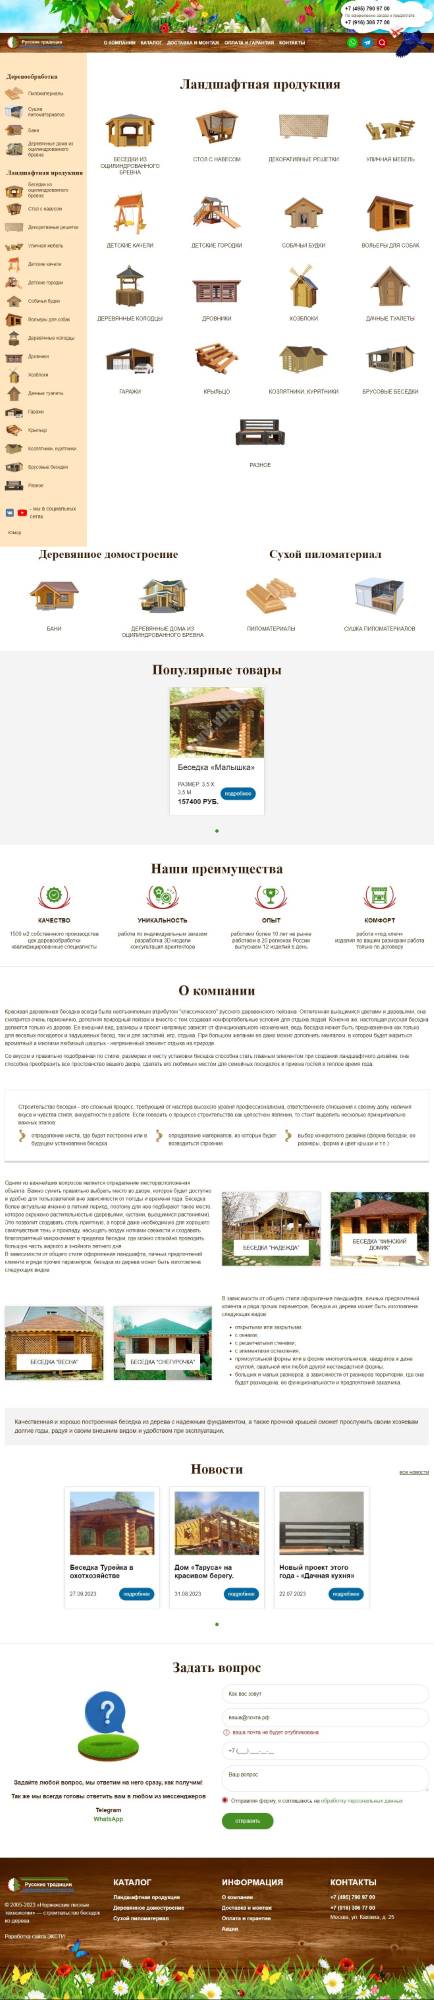 Модернизация сайта Компании «Русские традиции»